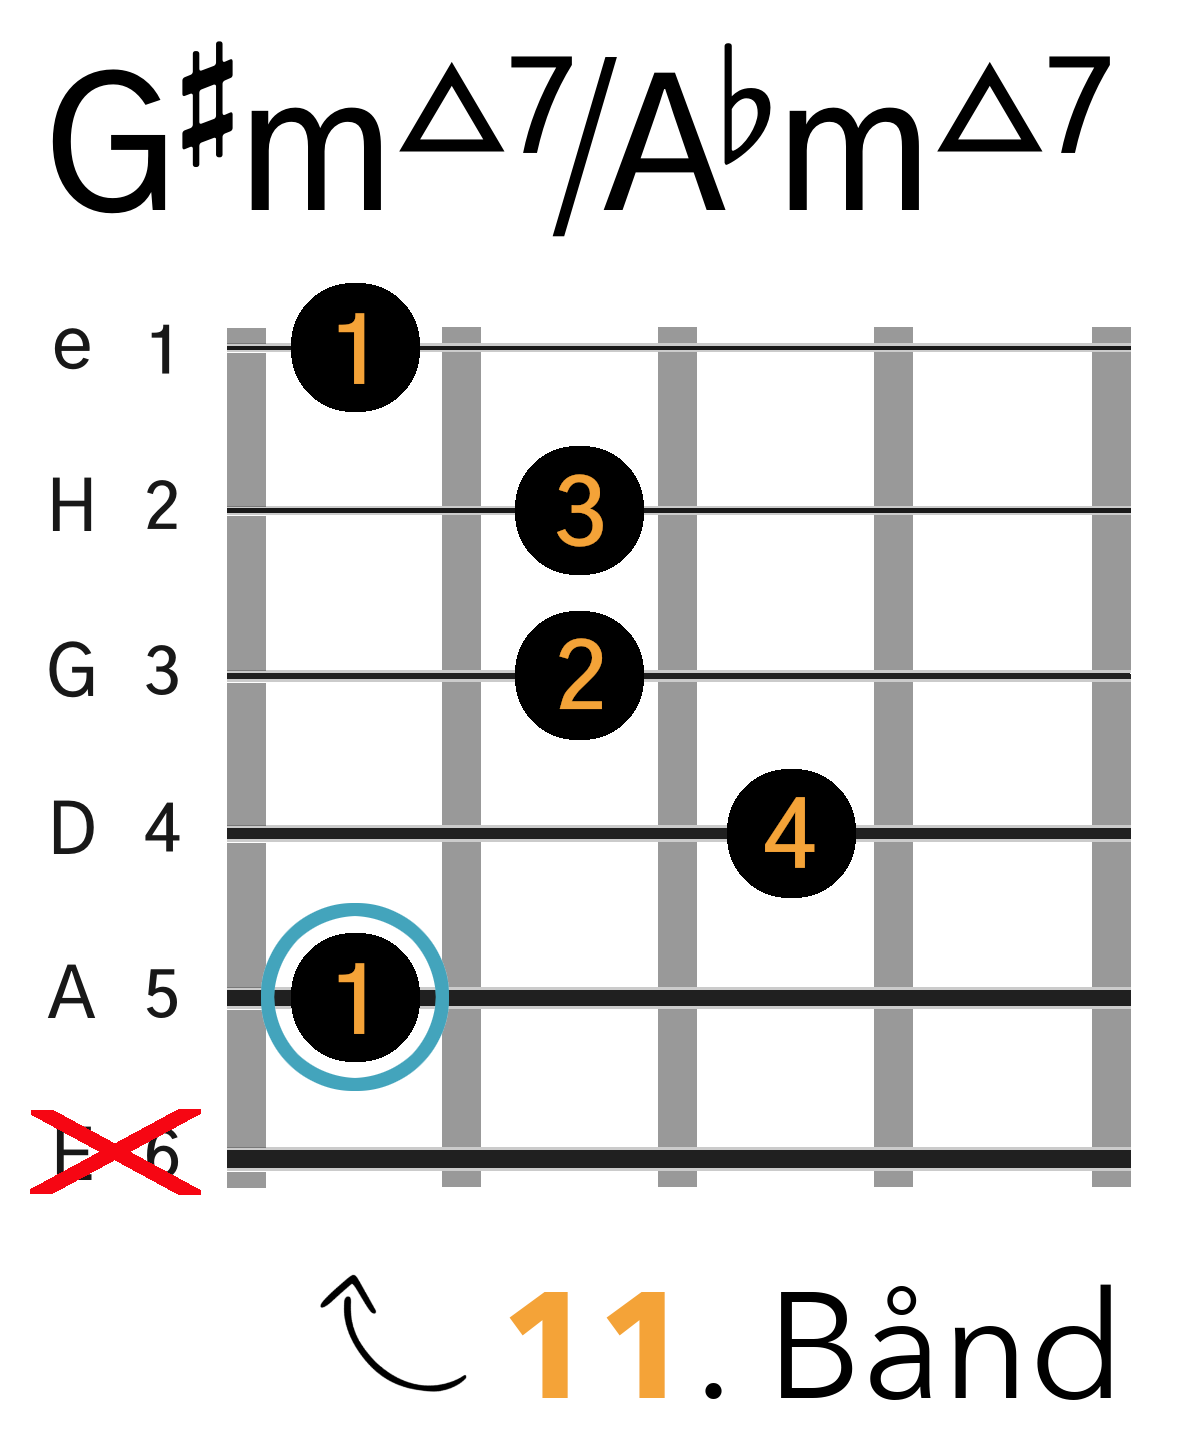 Grafik af hvordan man tager en G#m(maj7) / Abm(maj7) barré akkord (A-form) på guitar